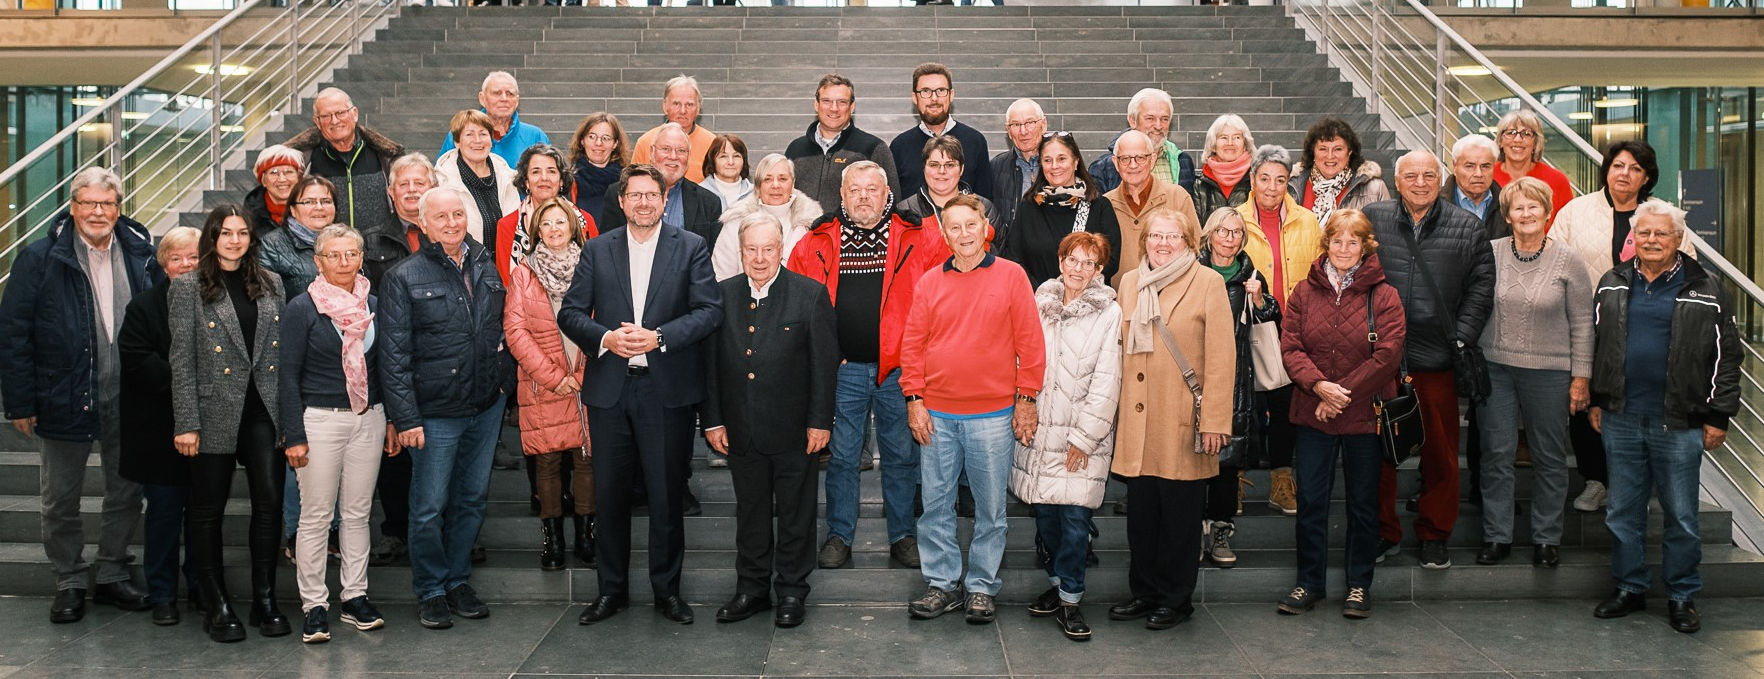 Zum Abschluss gab es das gemeinsame Gruppenfoto als Erinnerung an vier spannende Tage im politischen Berlin.   Bildquelle: Bundesregierung/StadtLandMensch-Fotografie